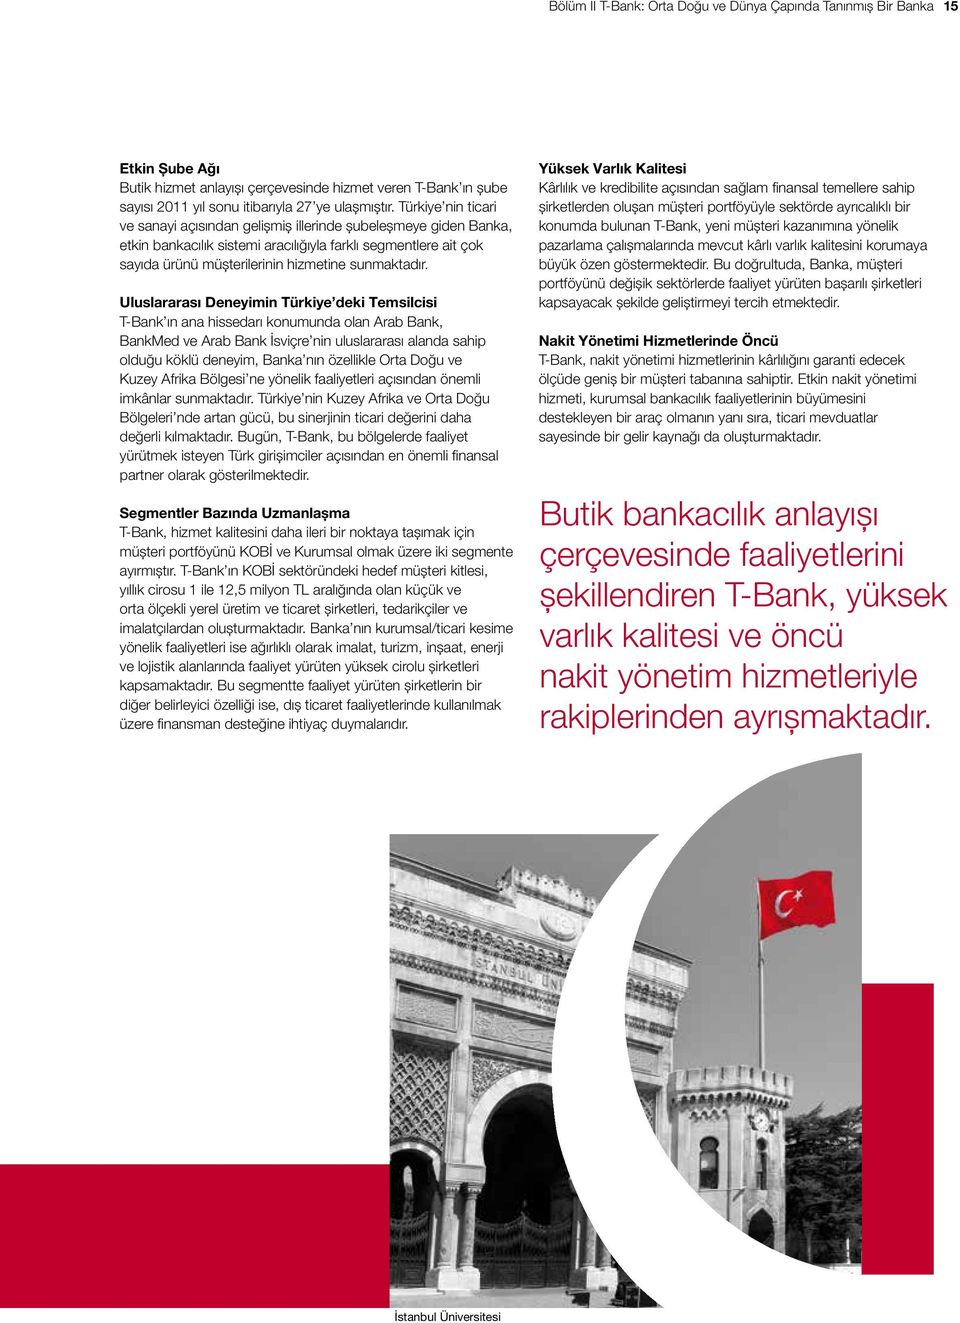 Uluslararası Deneyimin Türkiye deki Temsilcisi T-Bank ın ana hissedarı konumunda olan Arab Bank, BankMed ve Arab Bank İsviçre nin uluslararası alanda sahip olduğu köklü deneyim, Banka nın özellikle